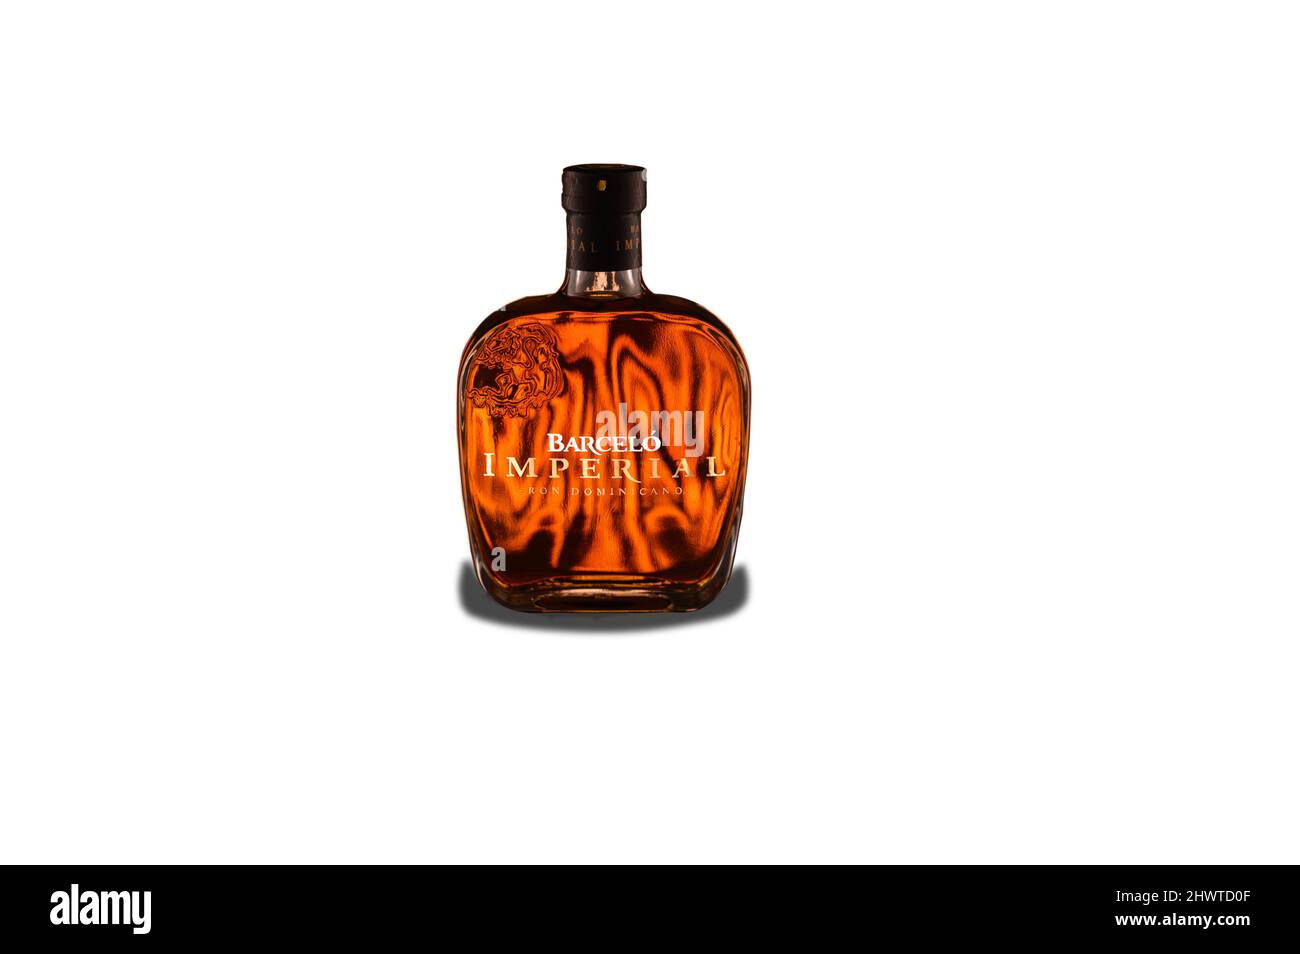 Puerto Plata, Dominikanische republik, 2.02.2022. Perfekte Flasche Barcelo Imperial Rum aus der Dominikanischen Republik. Dominikanischer Rum Barcelo auf weißem Hintergrund Stockfoto